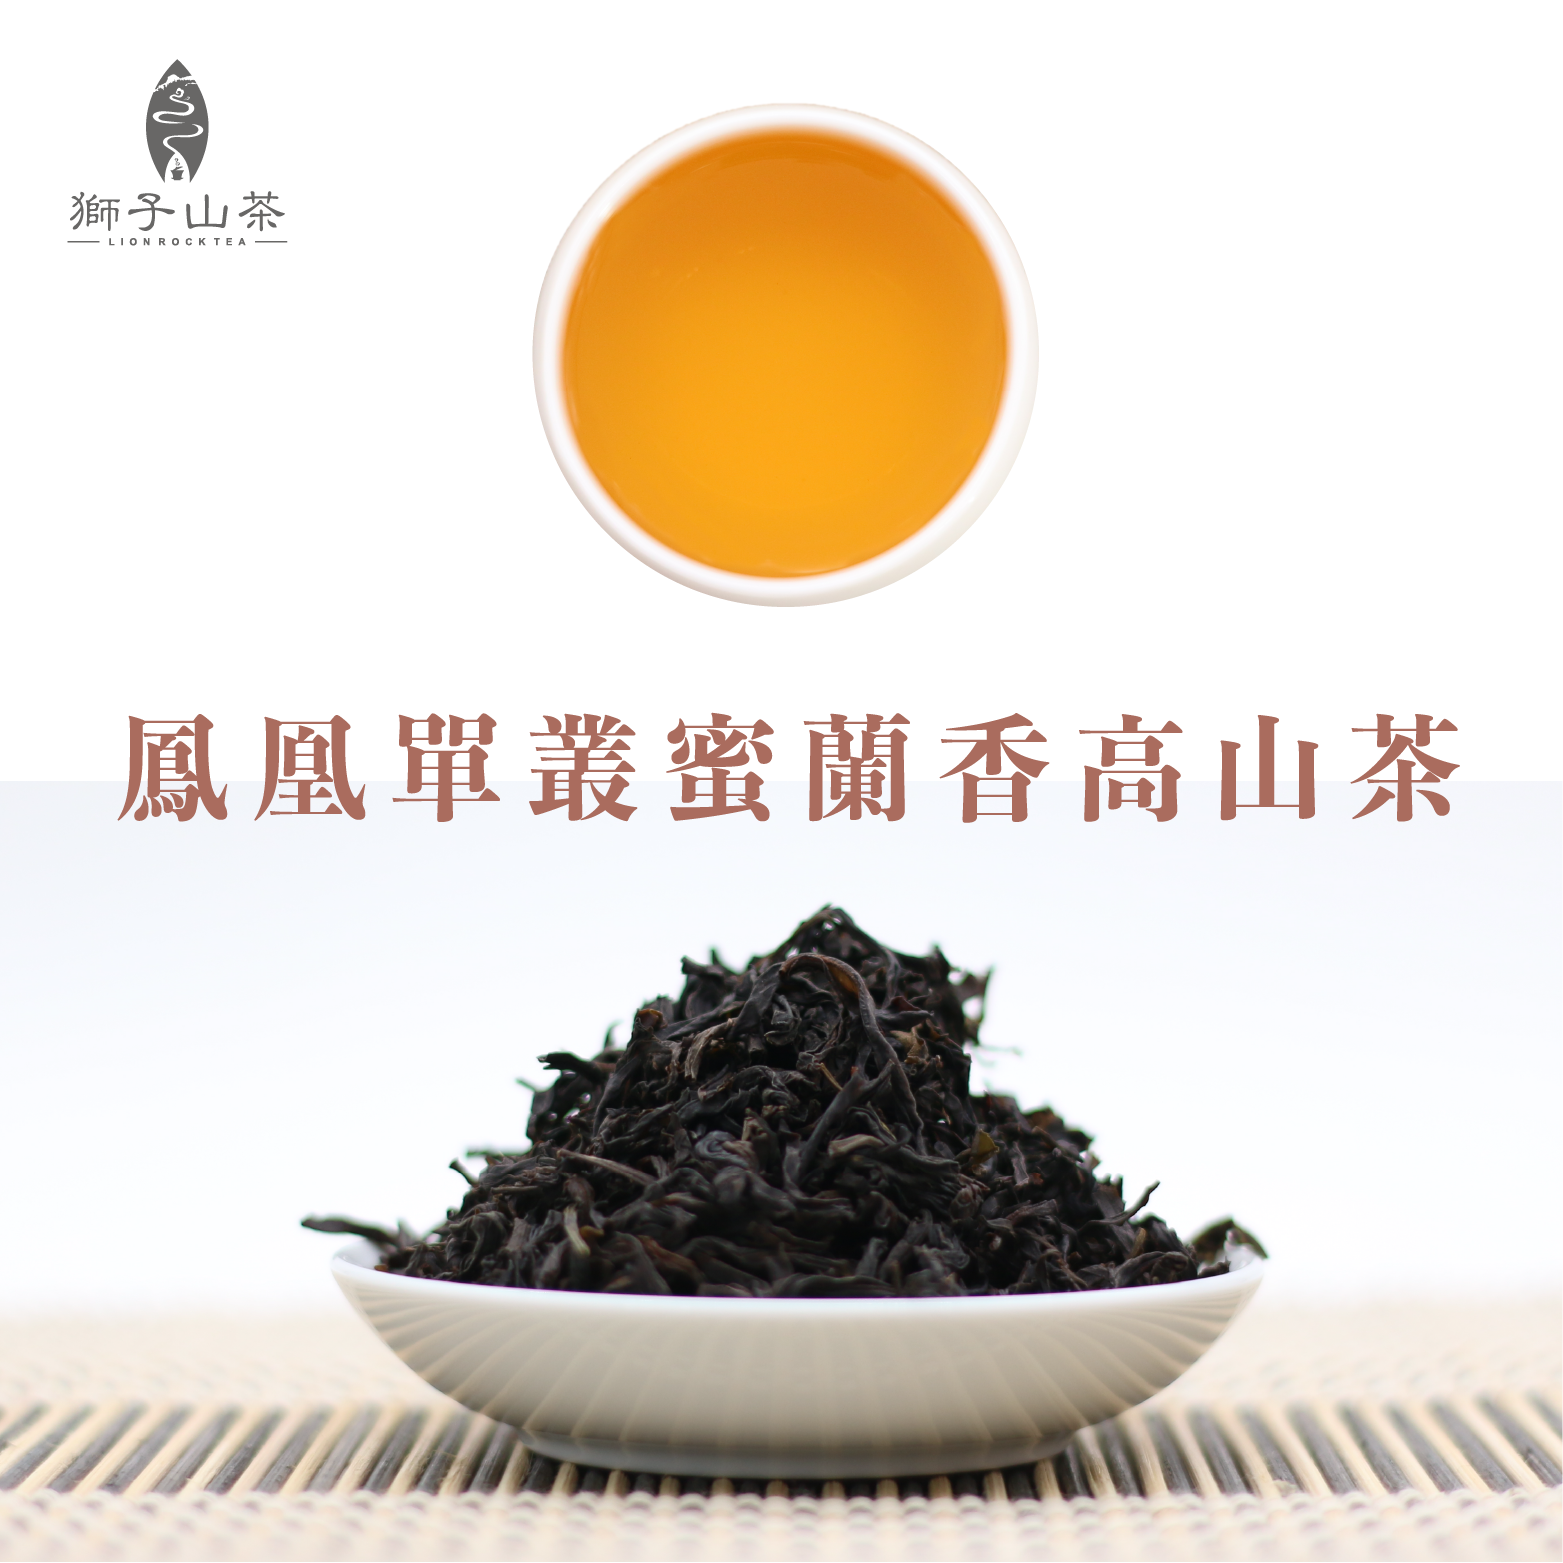 鳳凰單樅蜜蘭香高山茶(濃香型) 125g